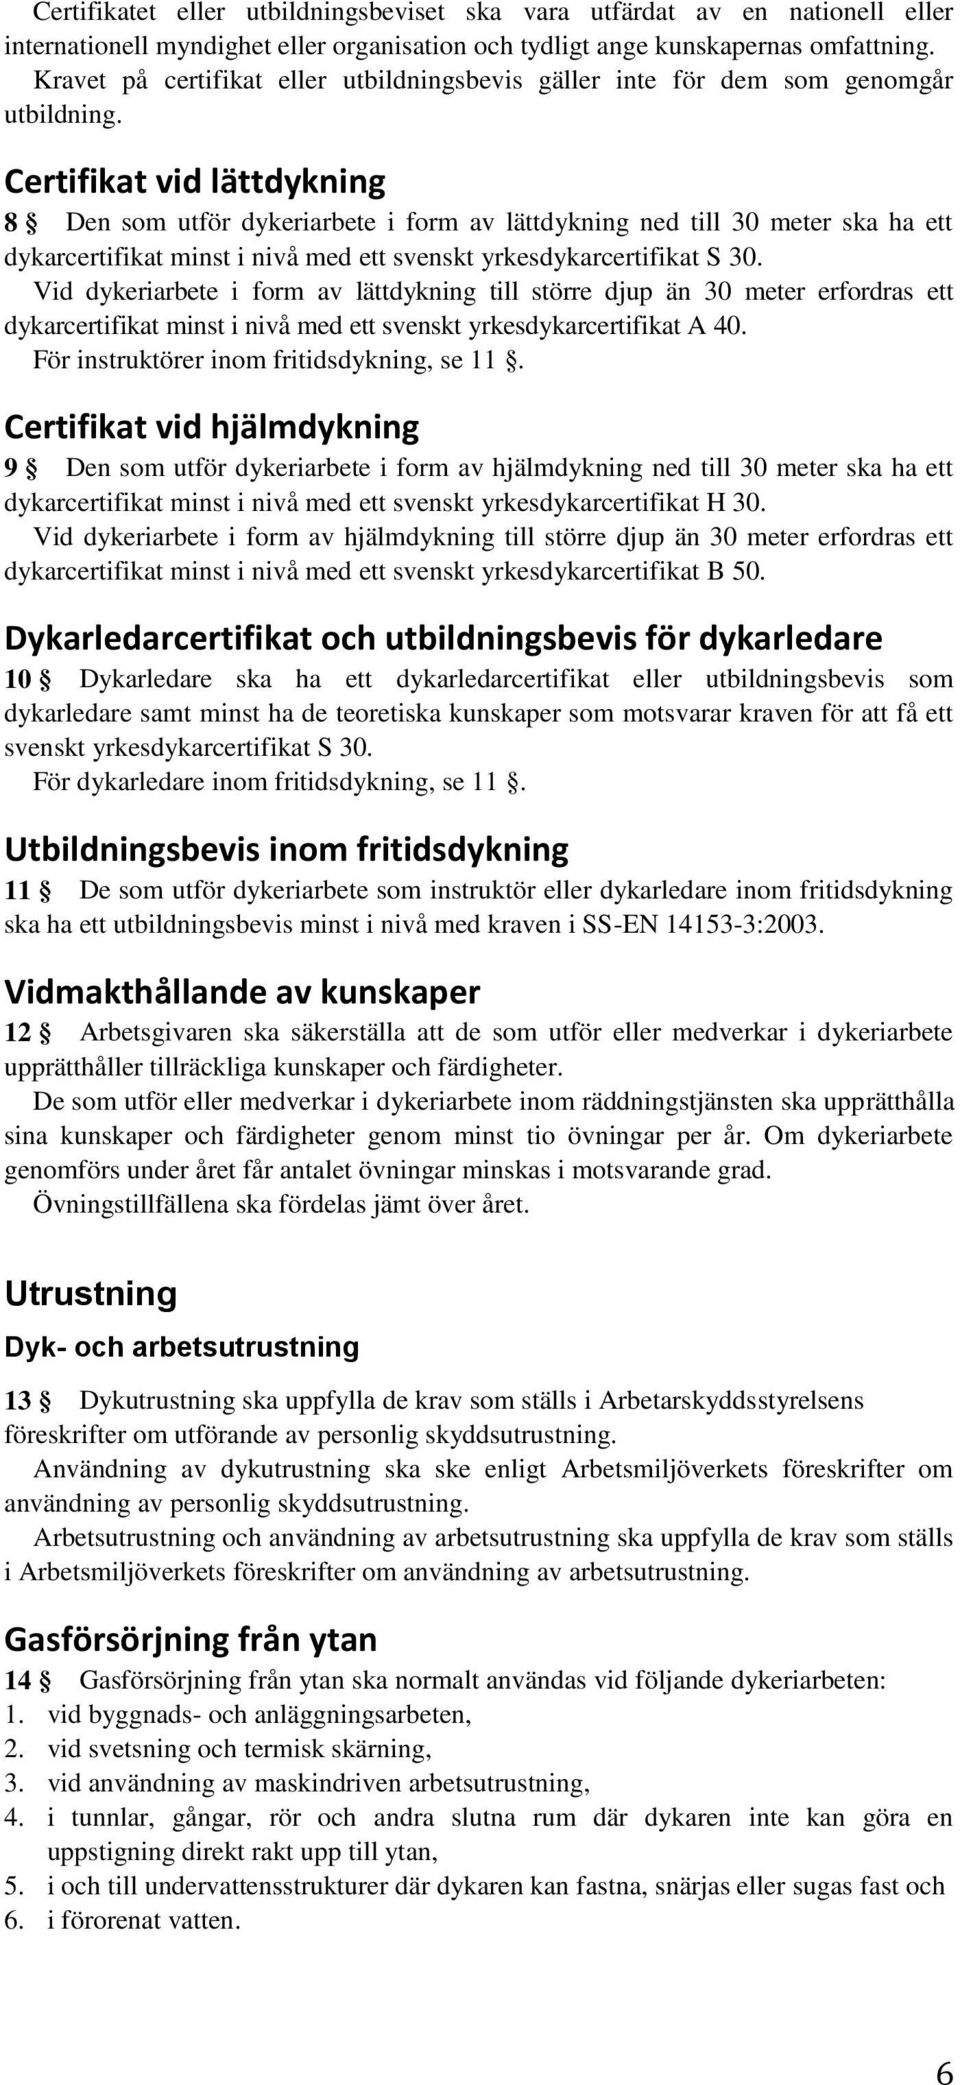 Certifikat vid lättdykning 8 Den som utför dykeriarbete i form av lättdykning ned till 30 meter ska ha ett dykarcertifikat minst i nivå med ett svenskt yrkesdykarcertifikat S 30.